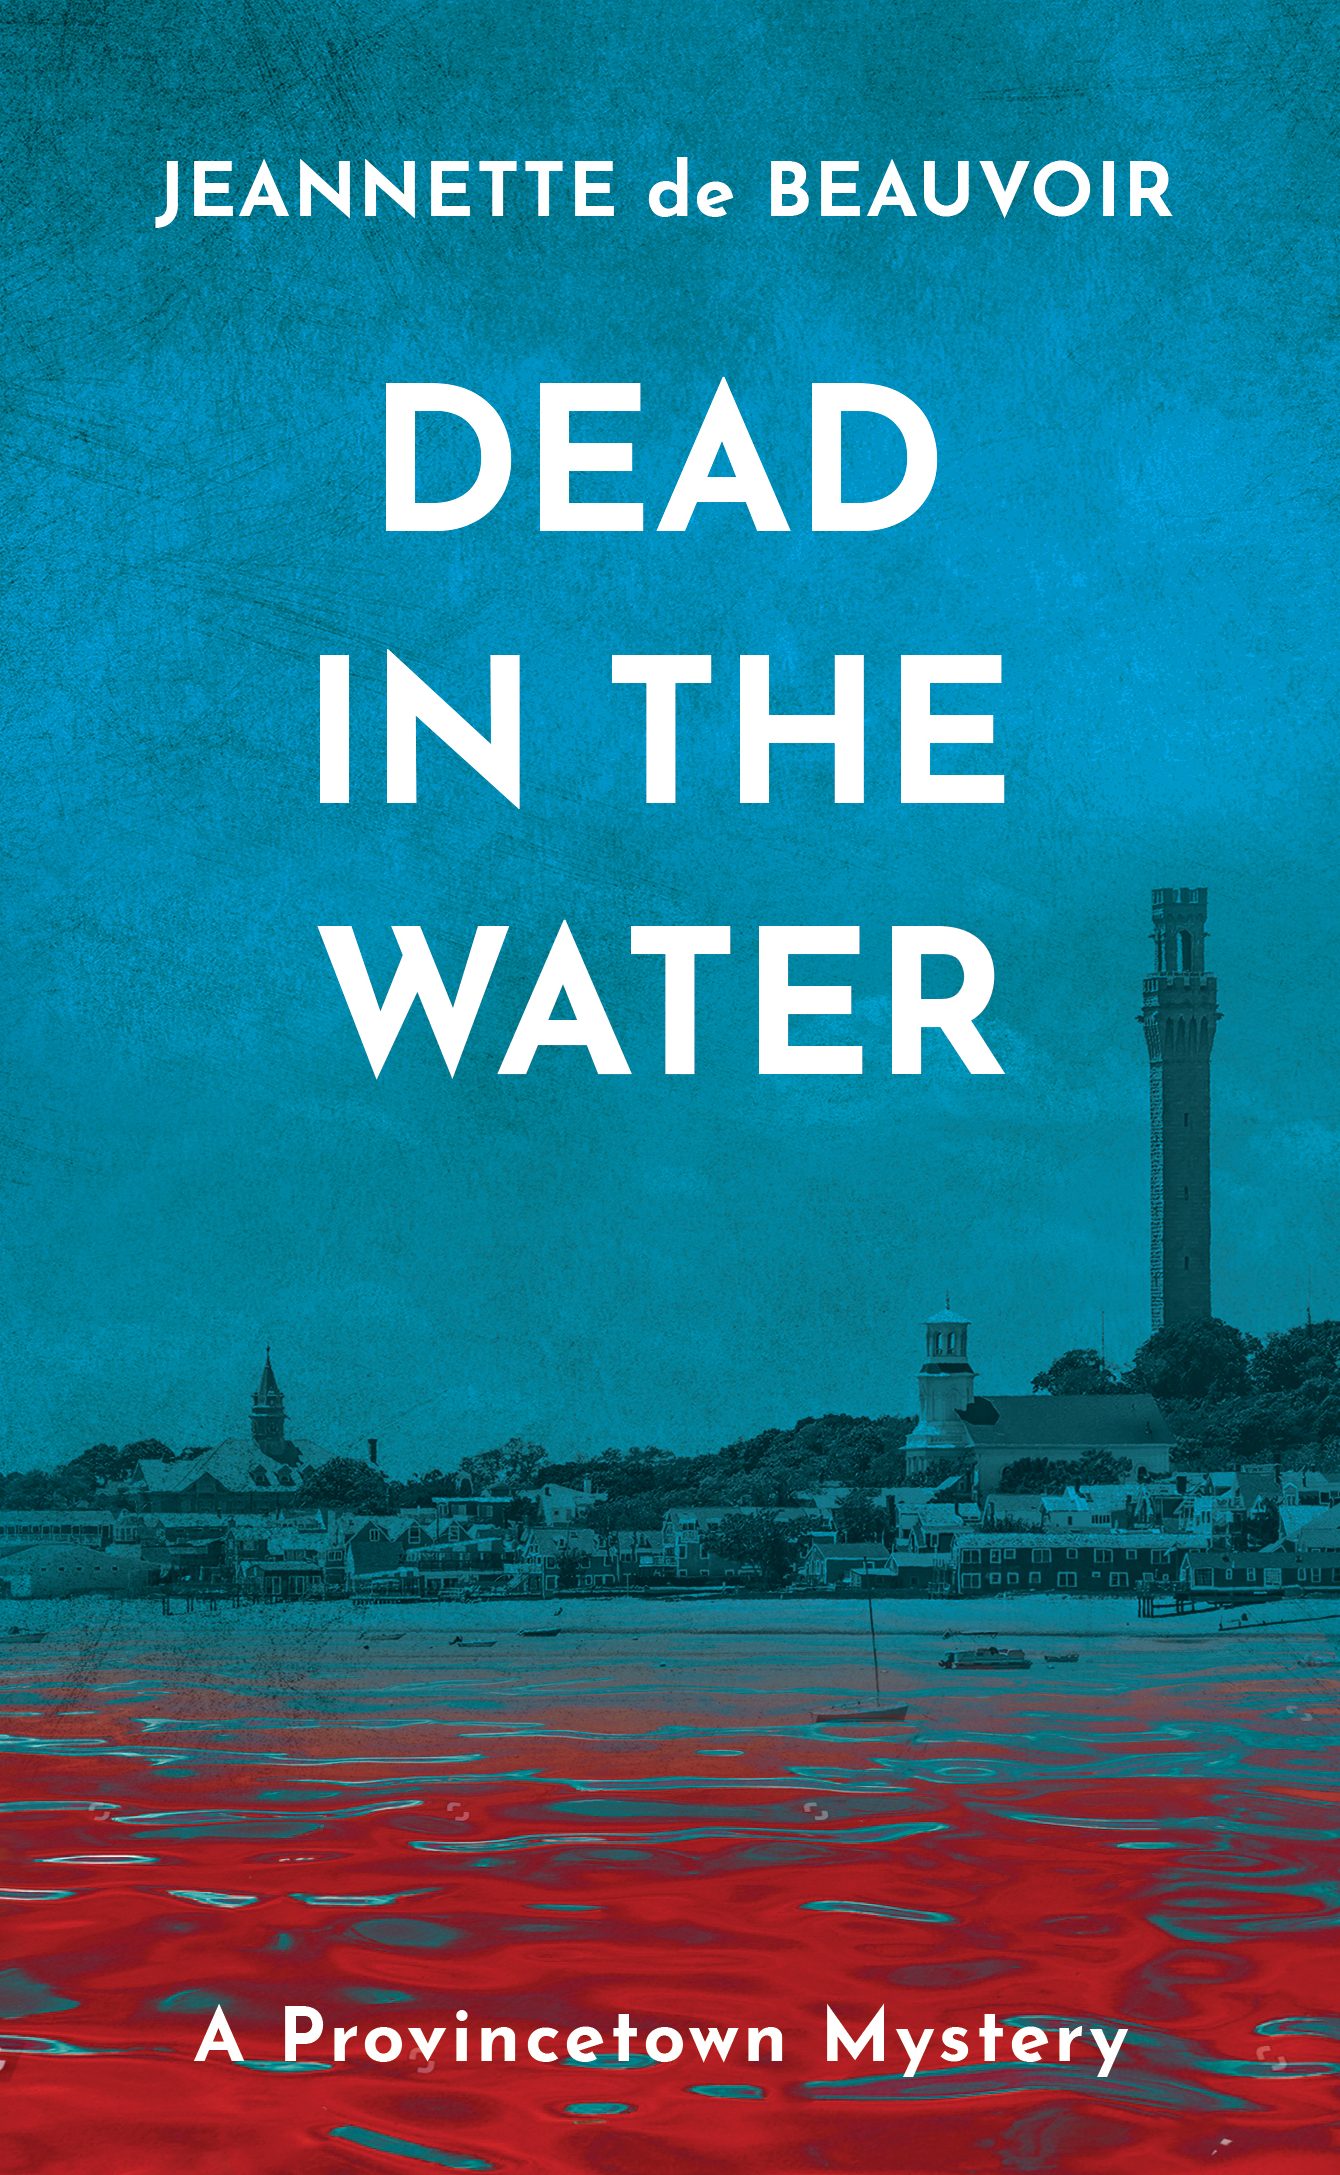 Dead In The Water by Jeannette de Beauvoir